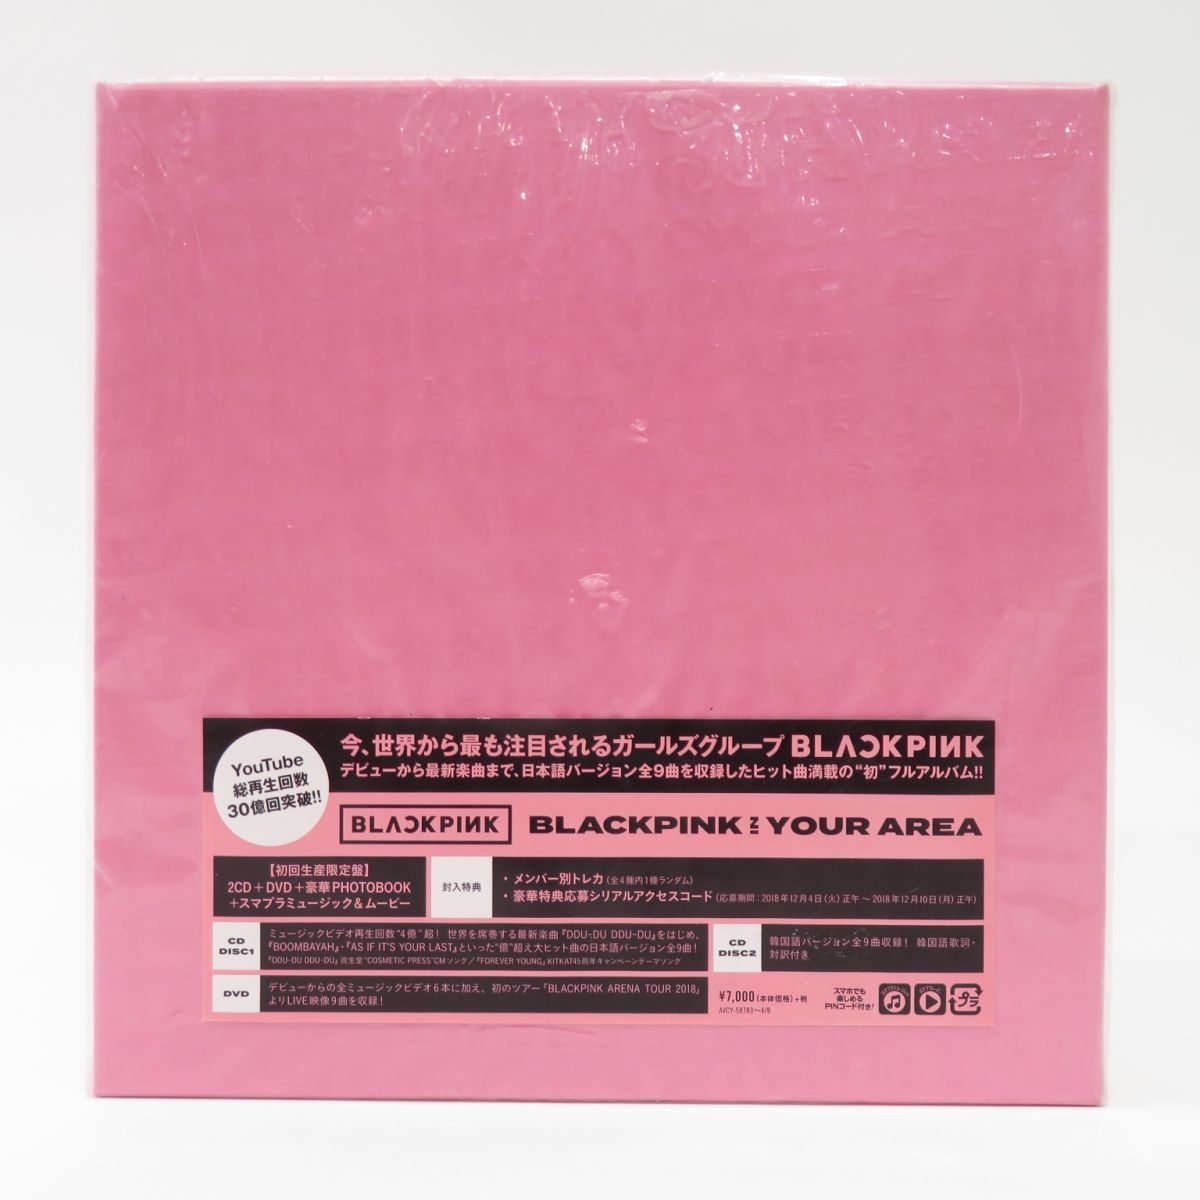 2CD+DVD+PHOTOBOOK BLACKPINK / BLACKPINK IN YOUR AREA 初回限定盤 ※中古